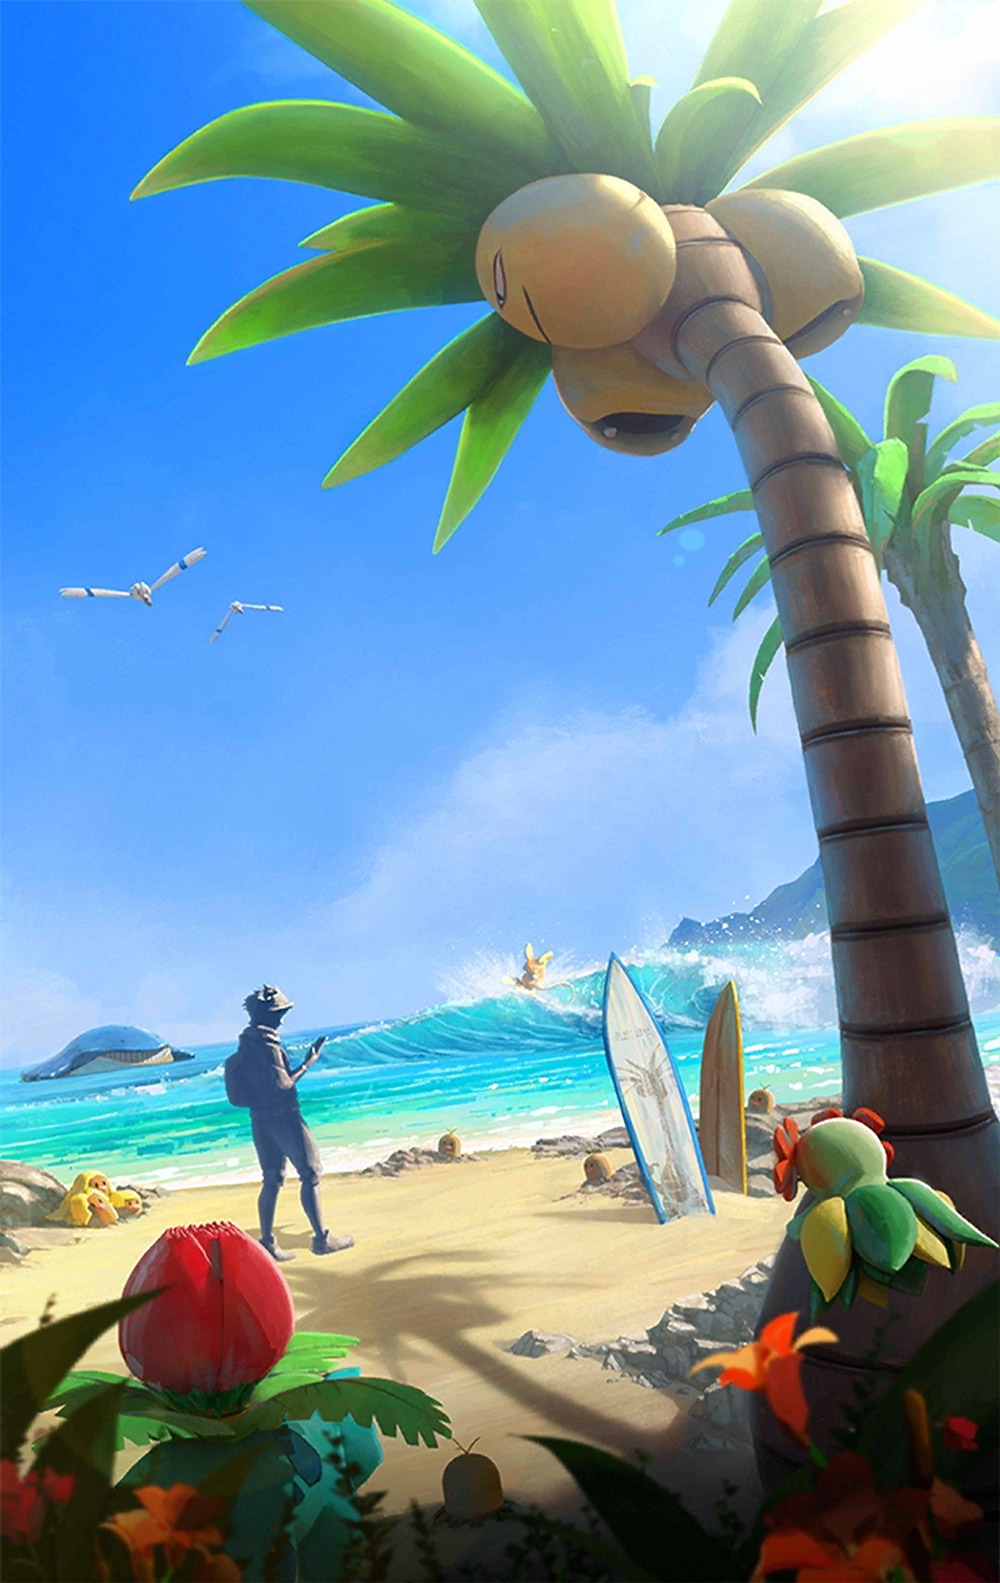 pokemon wallpaper android,tree,palm tree,cartoon,tropics,caribbean